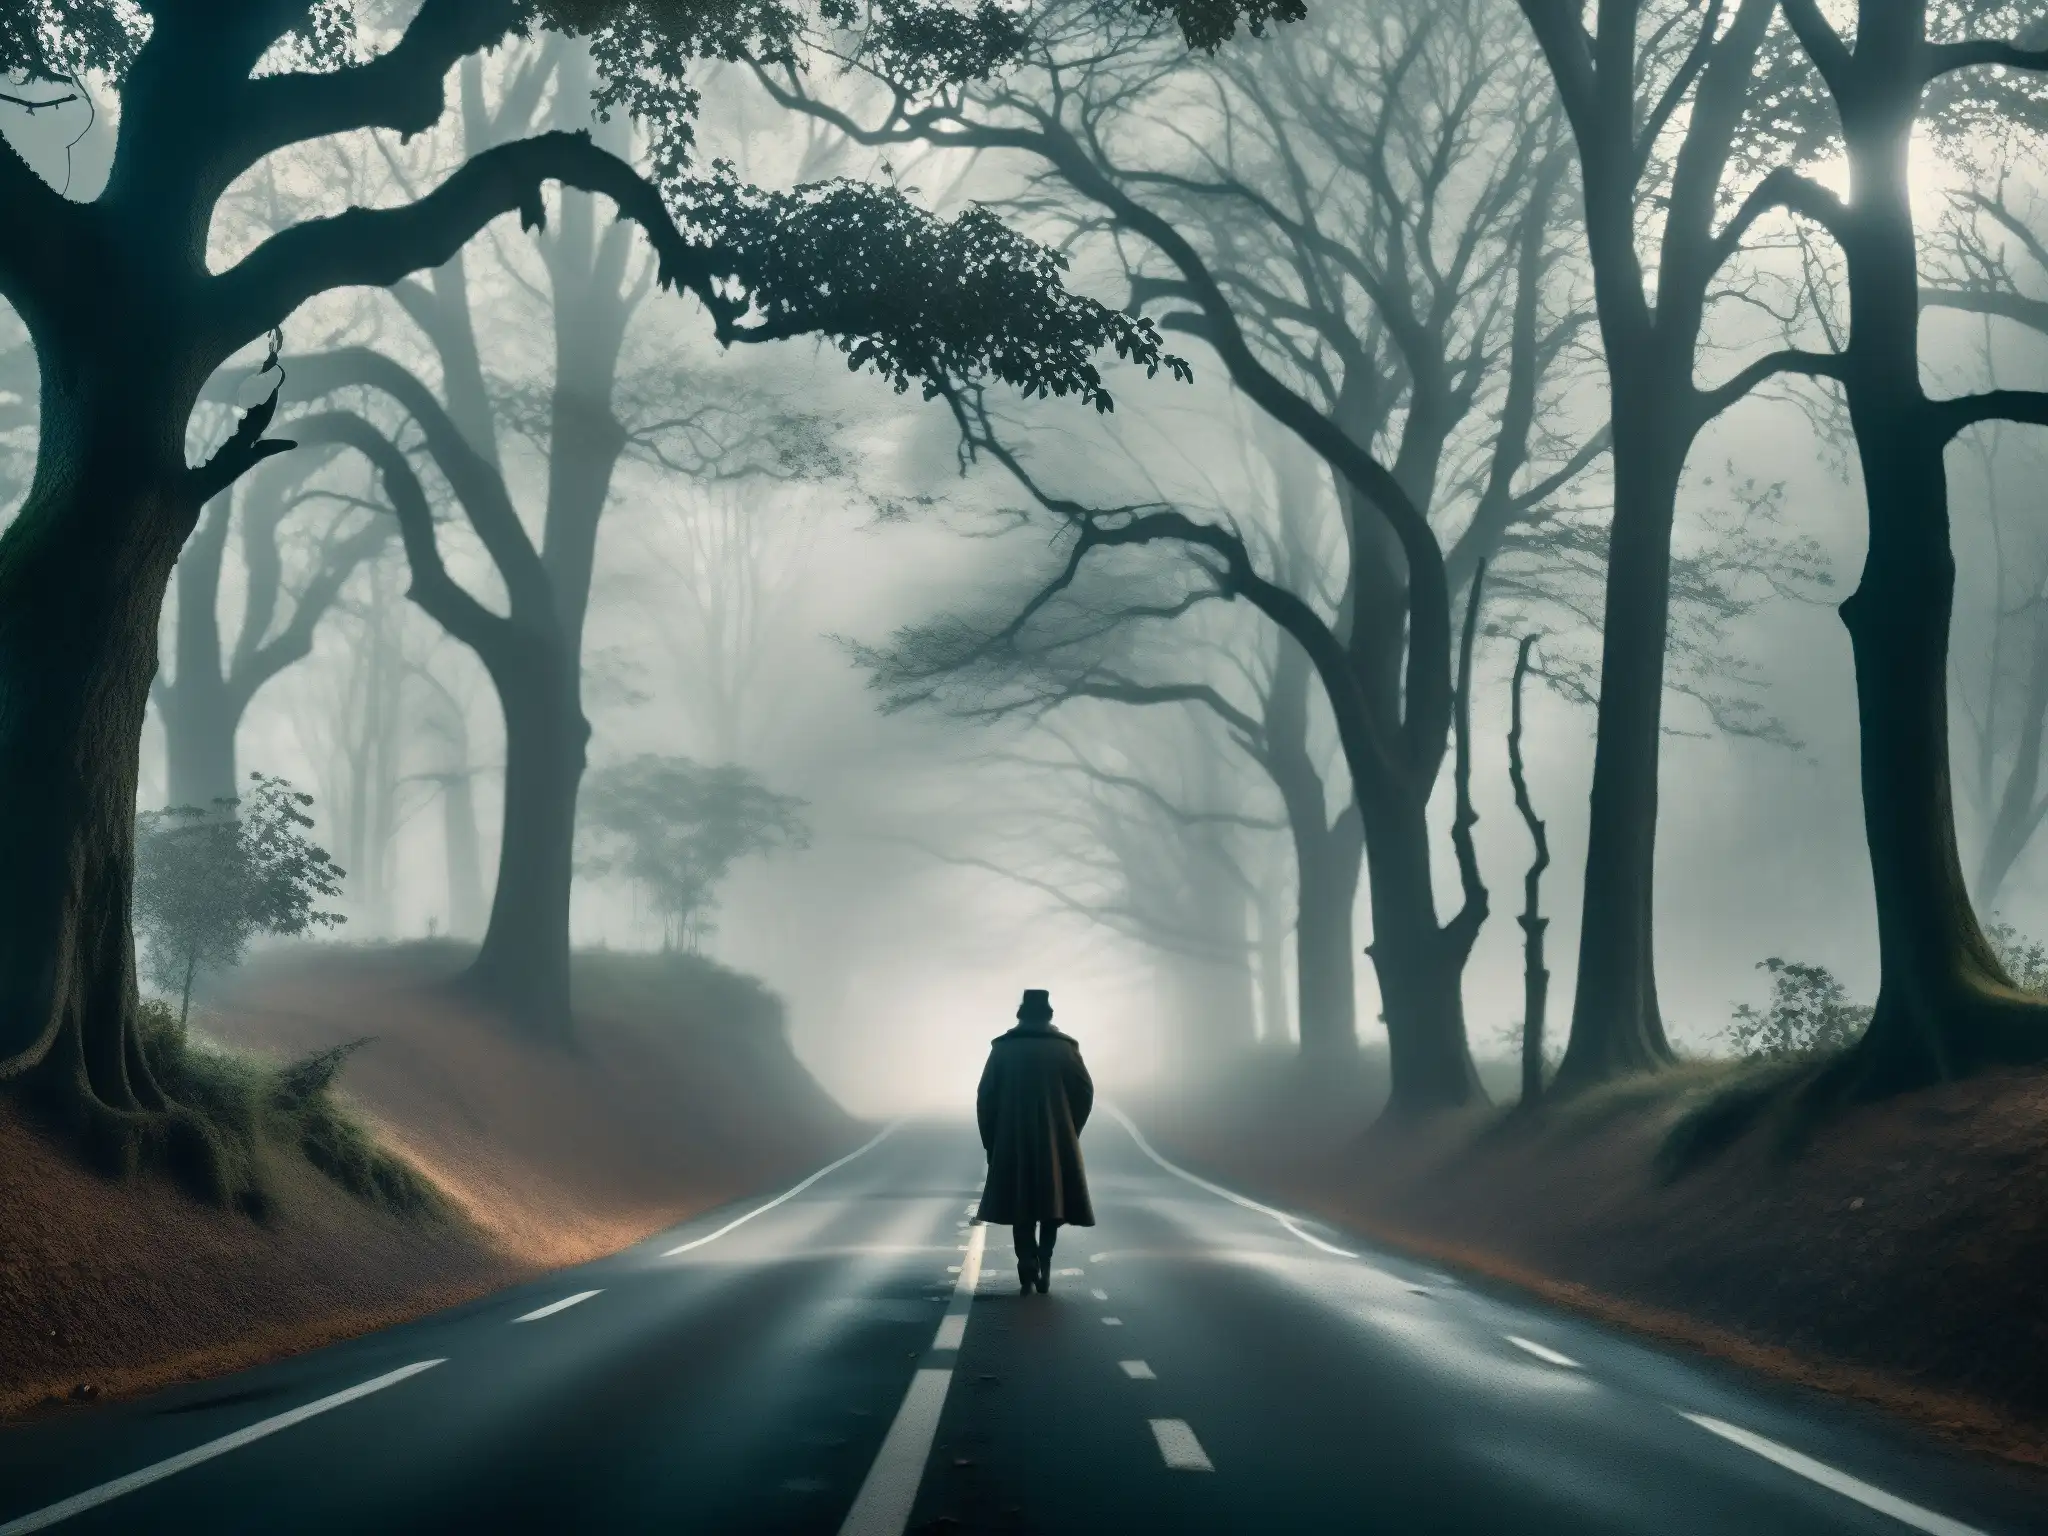 Una carretera neblinosa y lúgubre en medio de un denso bosque, con sombras siniestras y ramas retorcidas